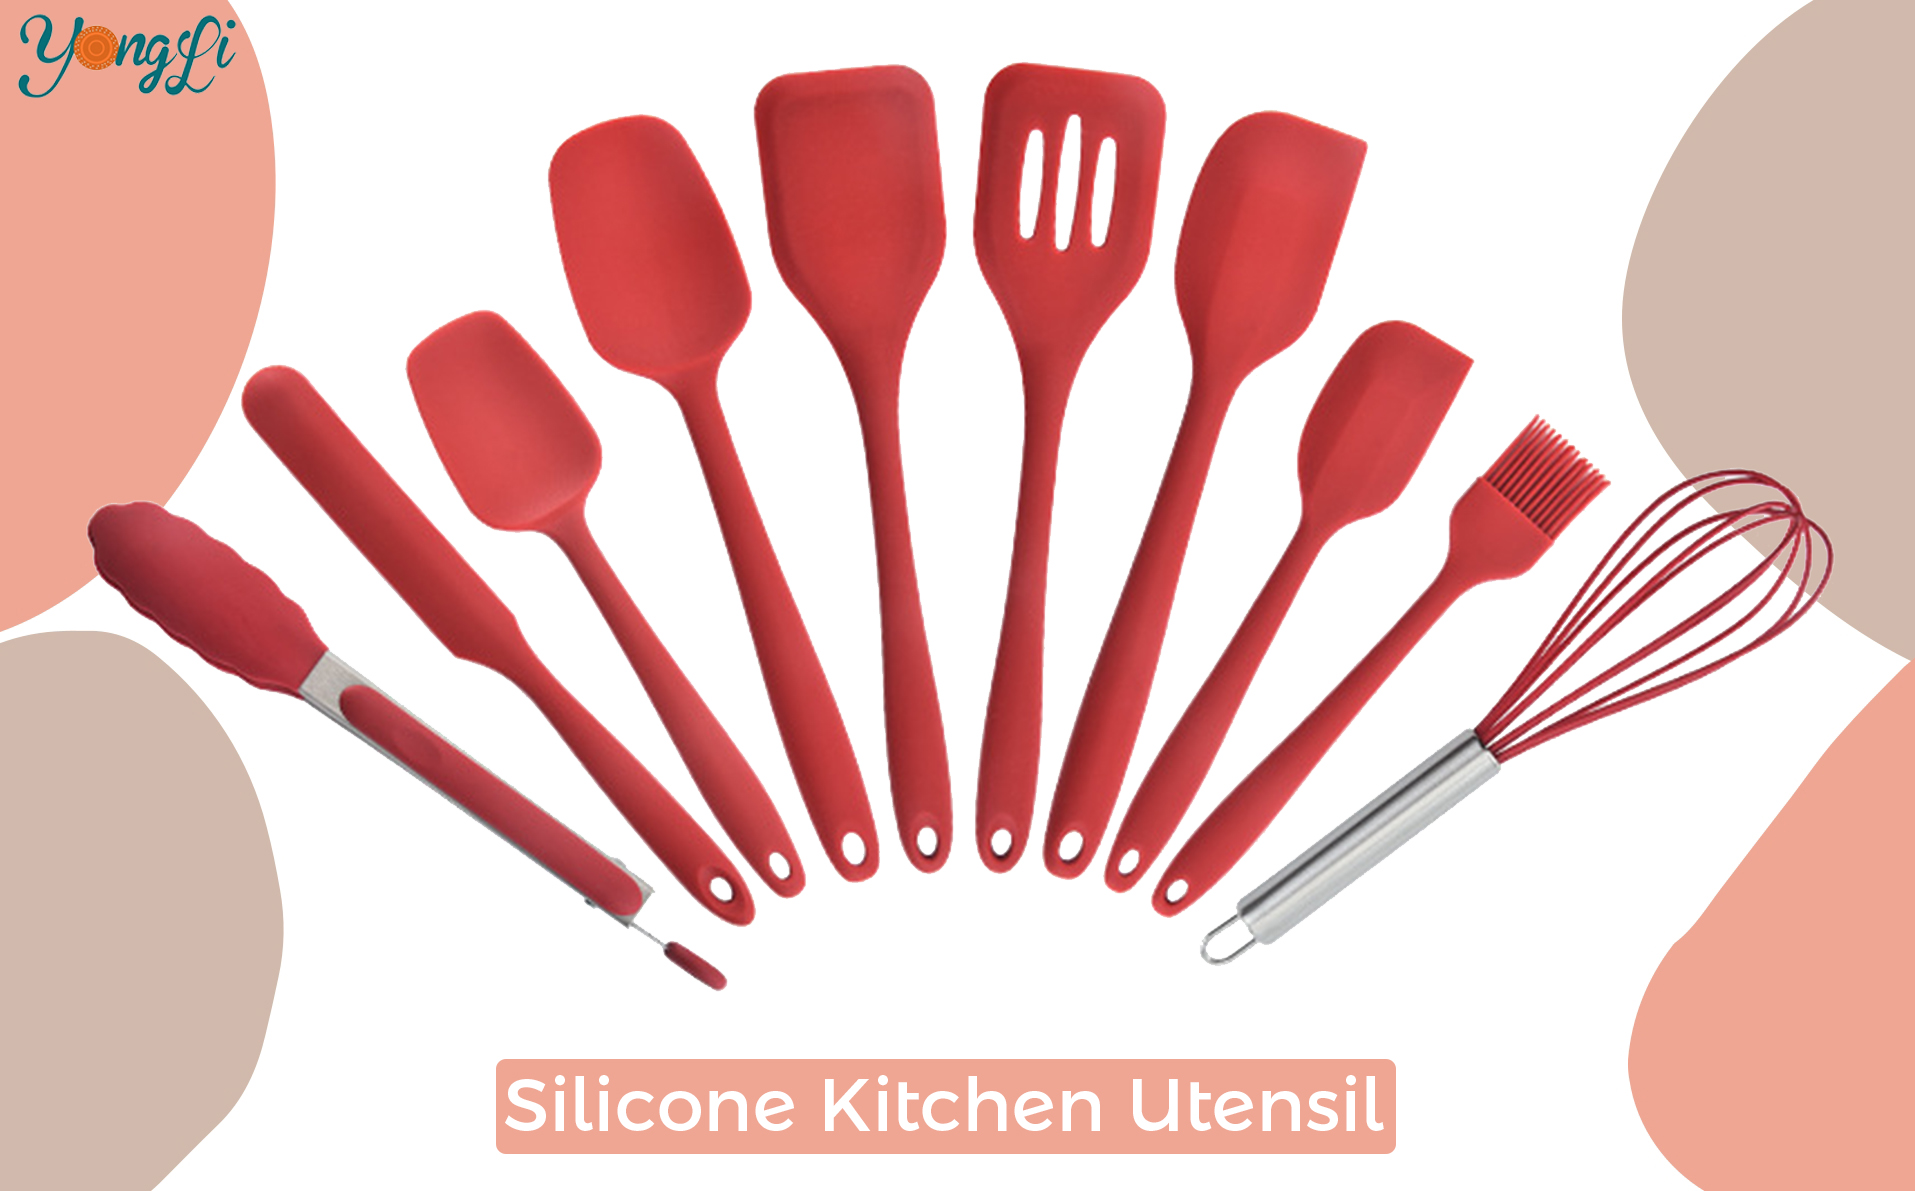 Leter du etter kjøkkenutstyr i silikon?|Yongli